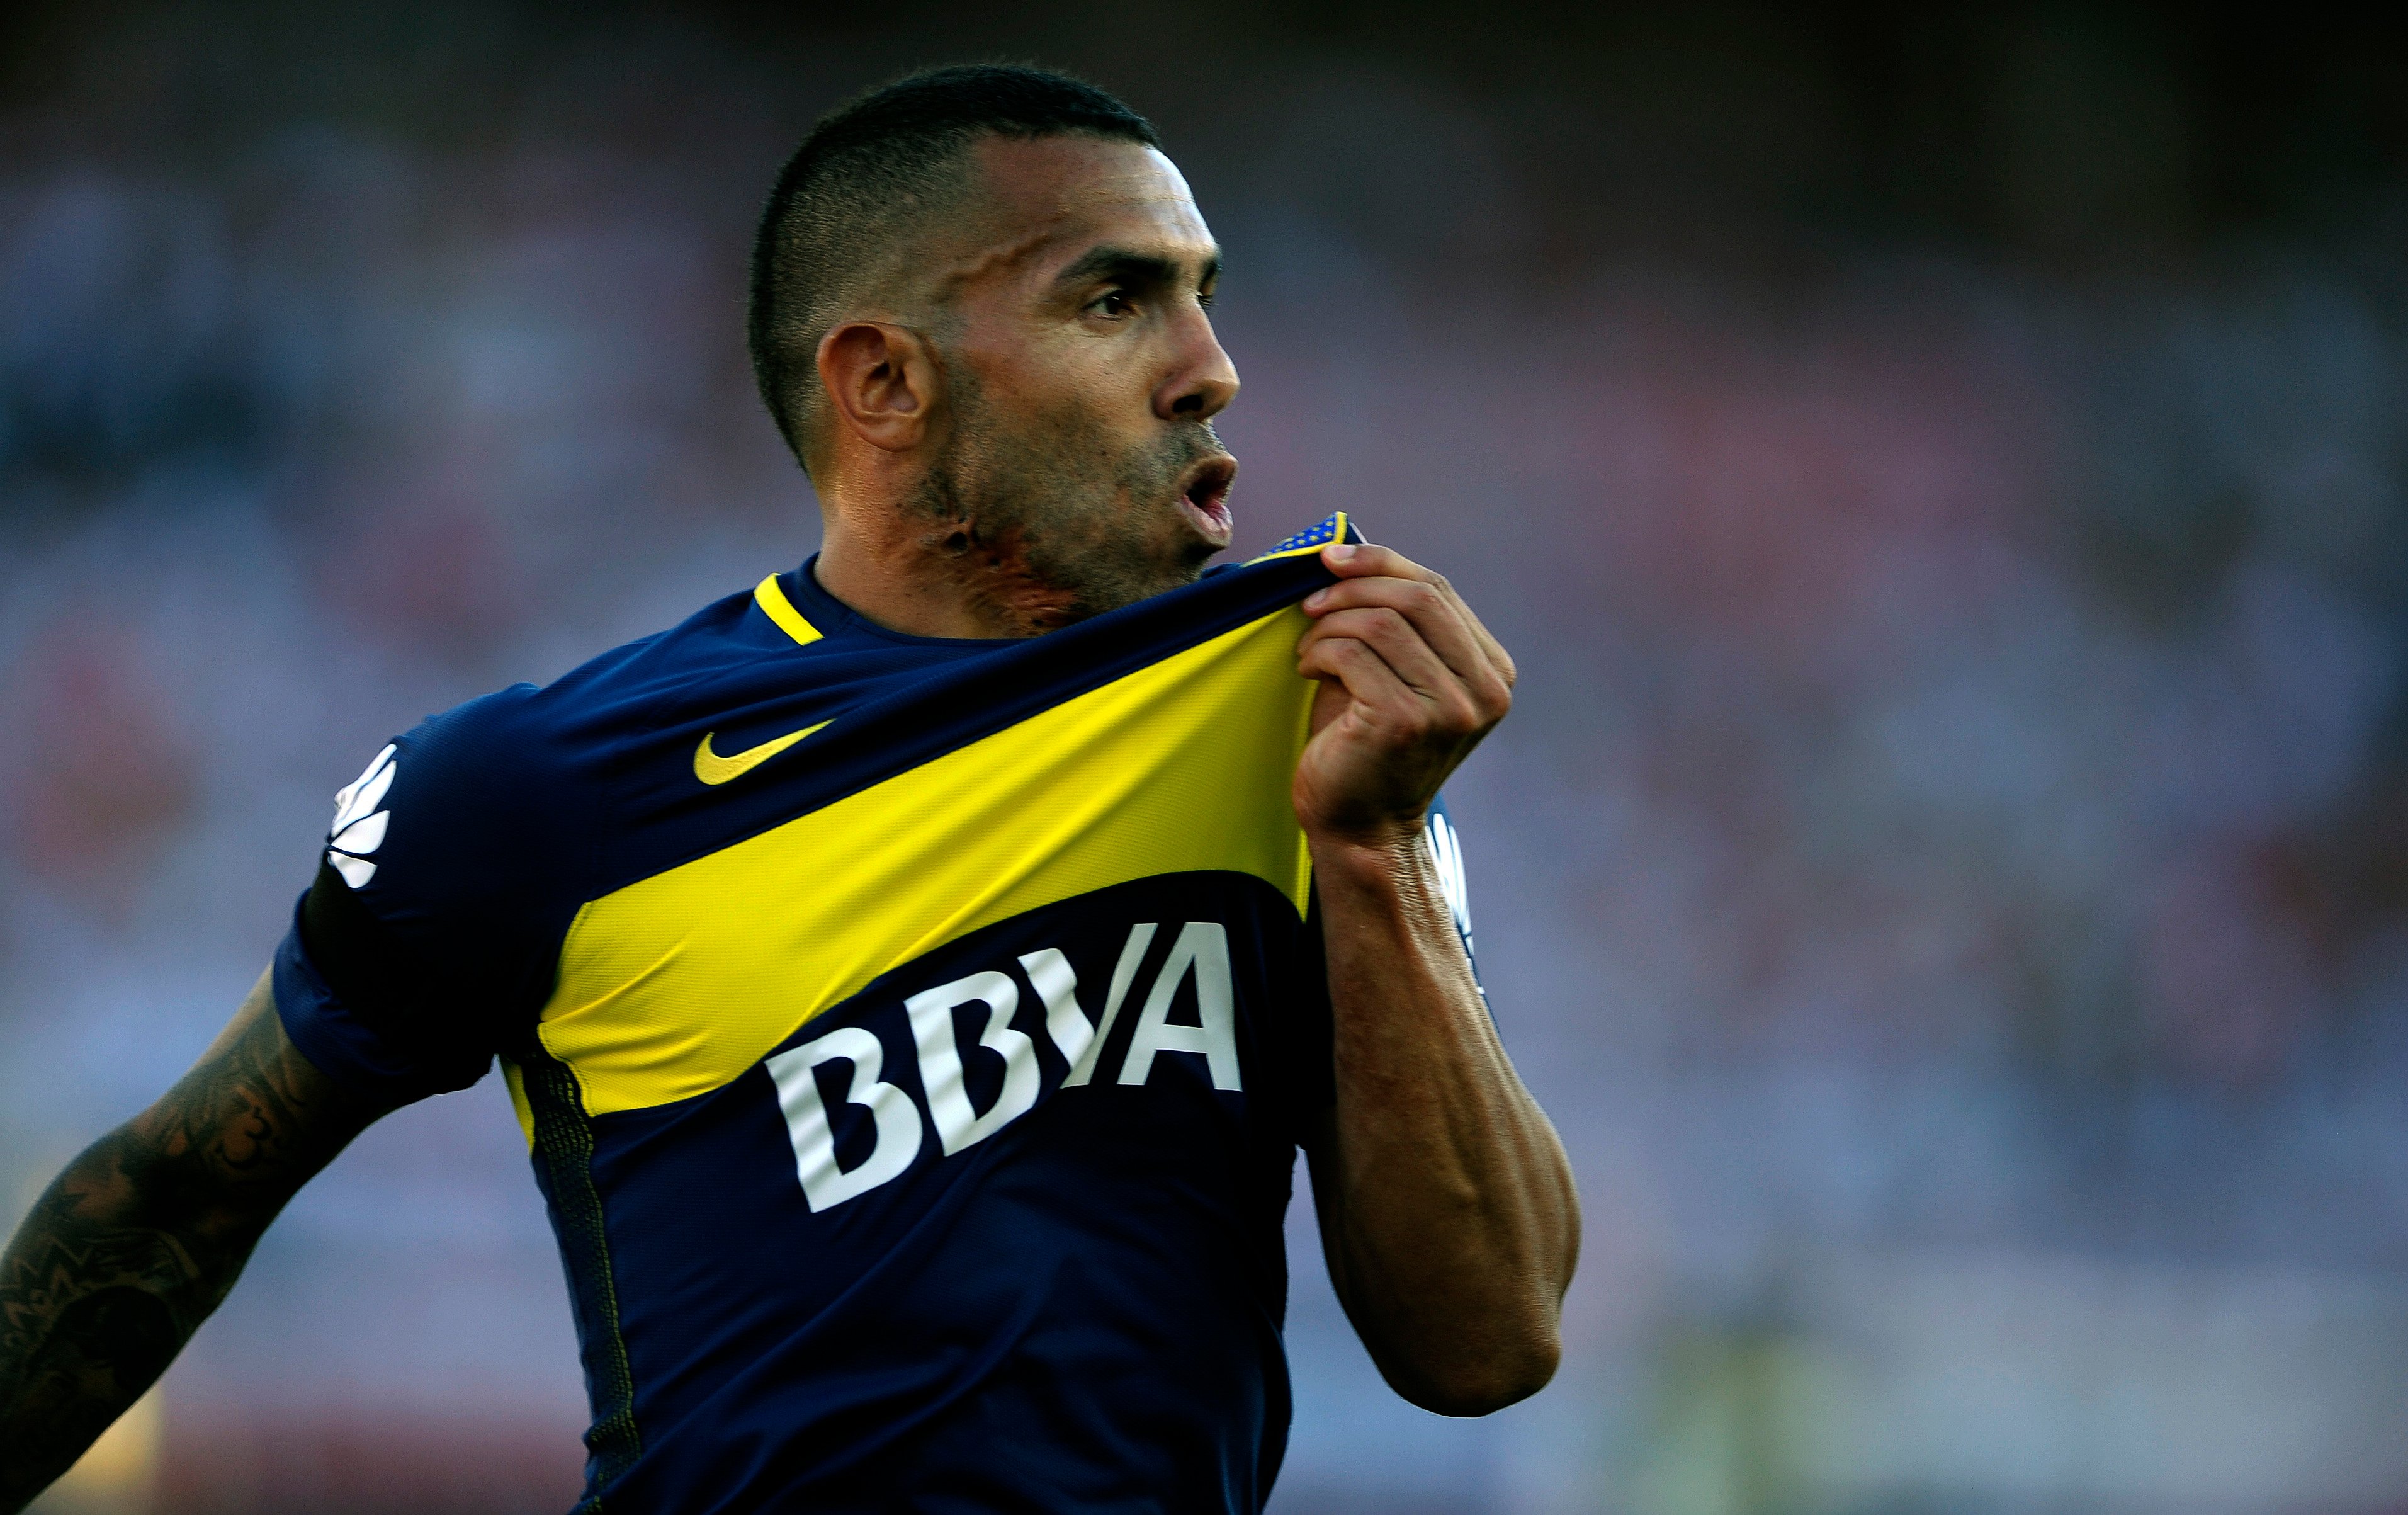 FECHADO - Agora é oficial. O atacante Carlitos Tevez renovou o seu contrato com o Boca Juniors. Depois de muitas idas e vindas, o argentino prolongou o seu vínculo com o time Xeneize até 2021.